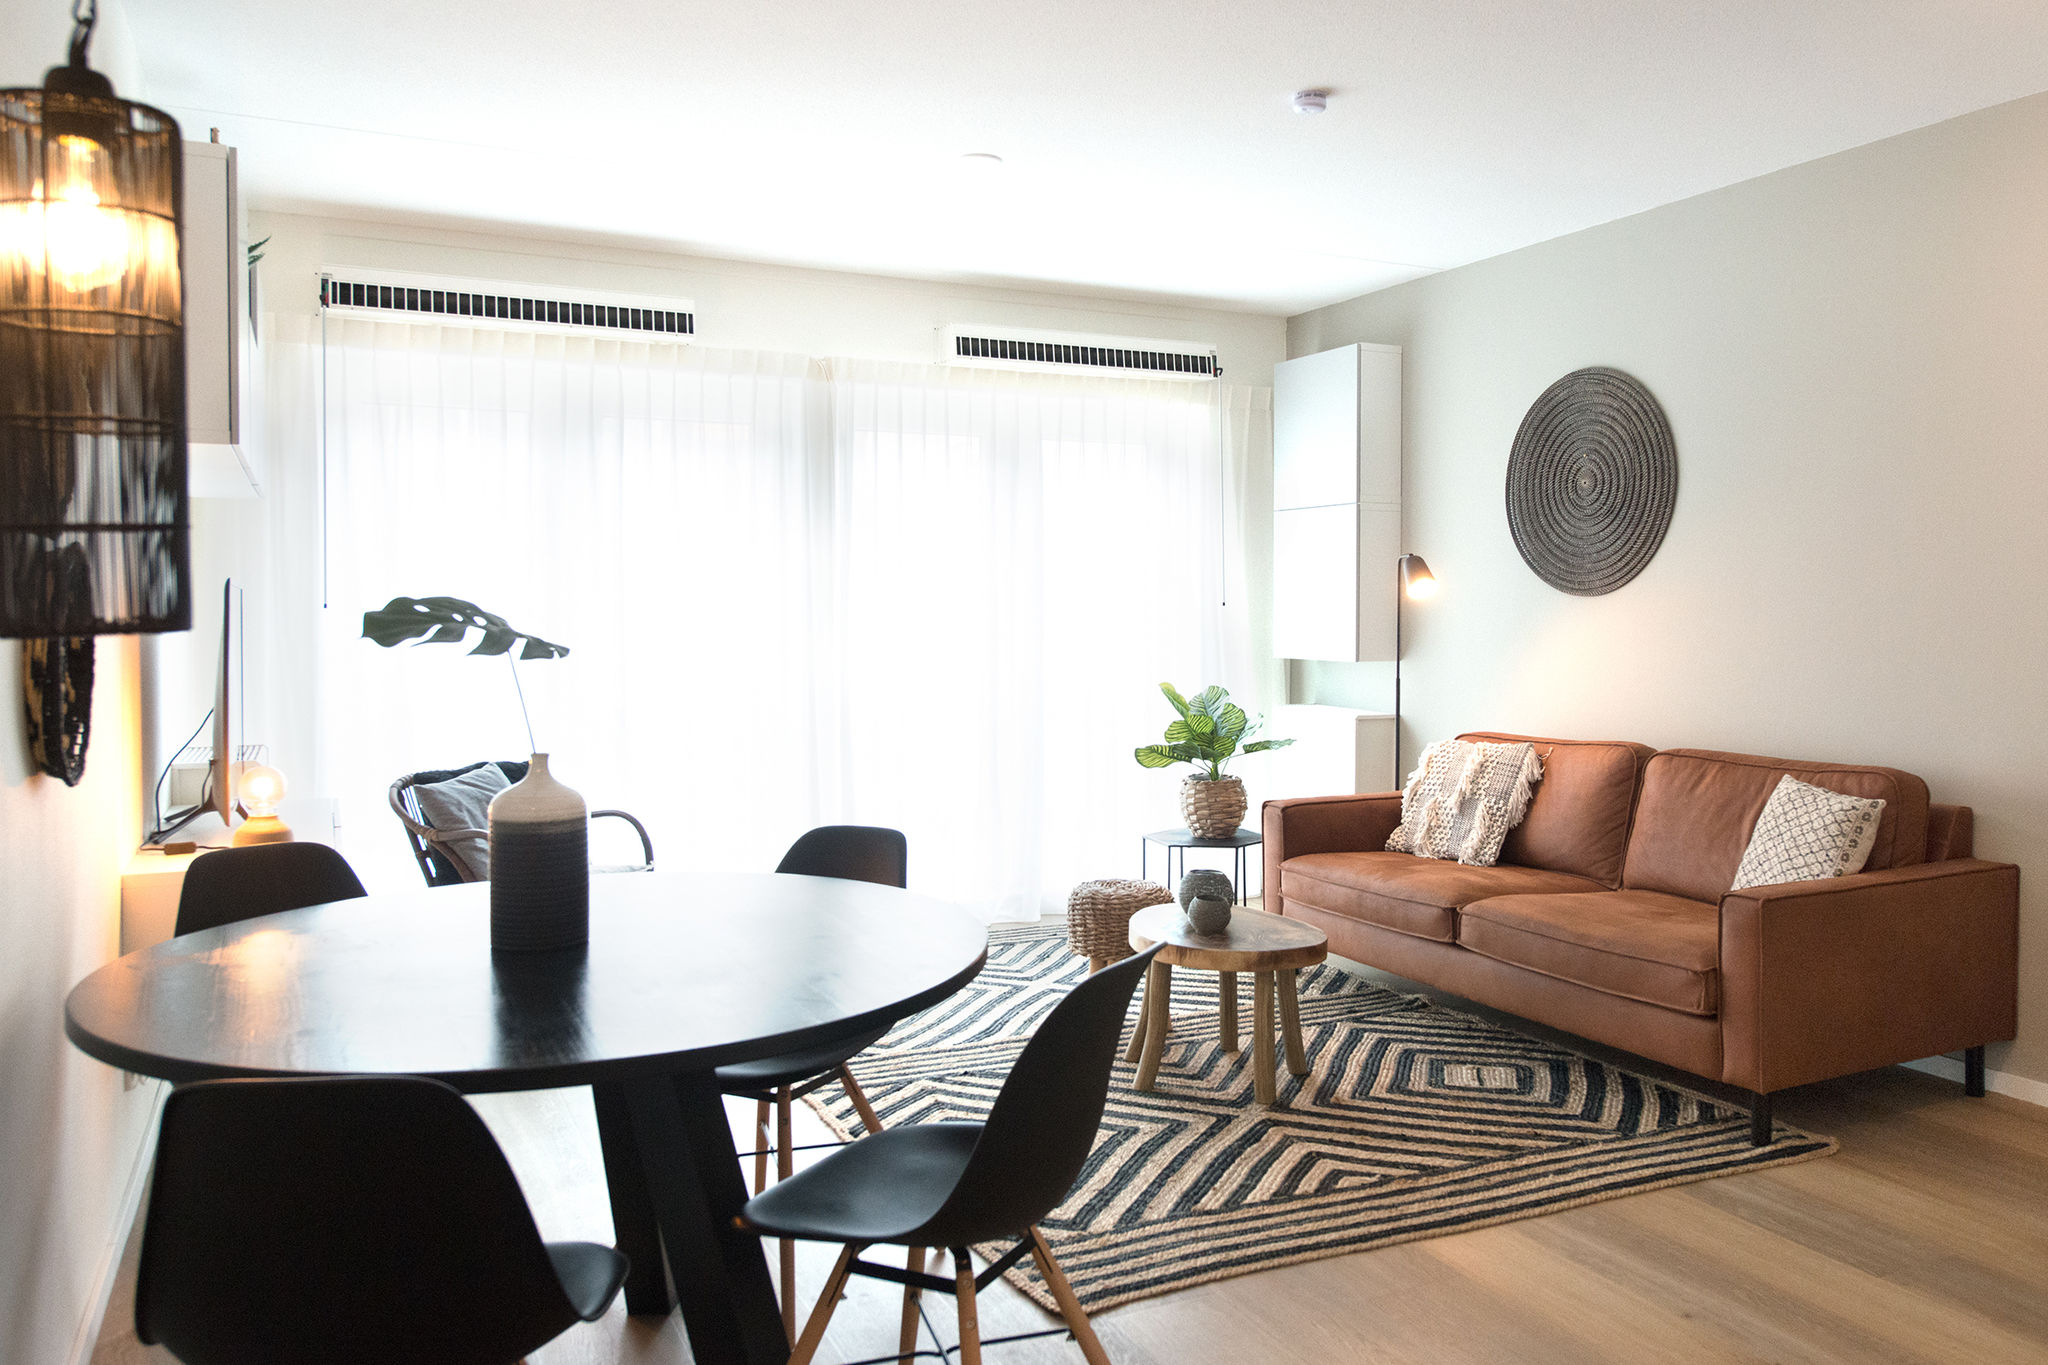 Lovely Apartment in Scheveningen with TV